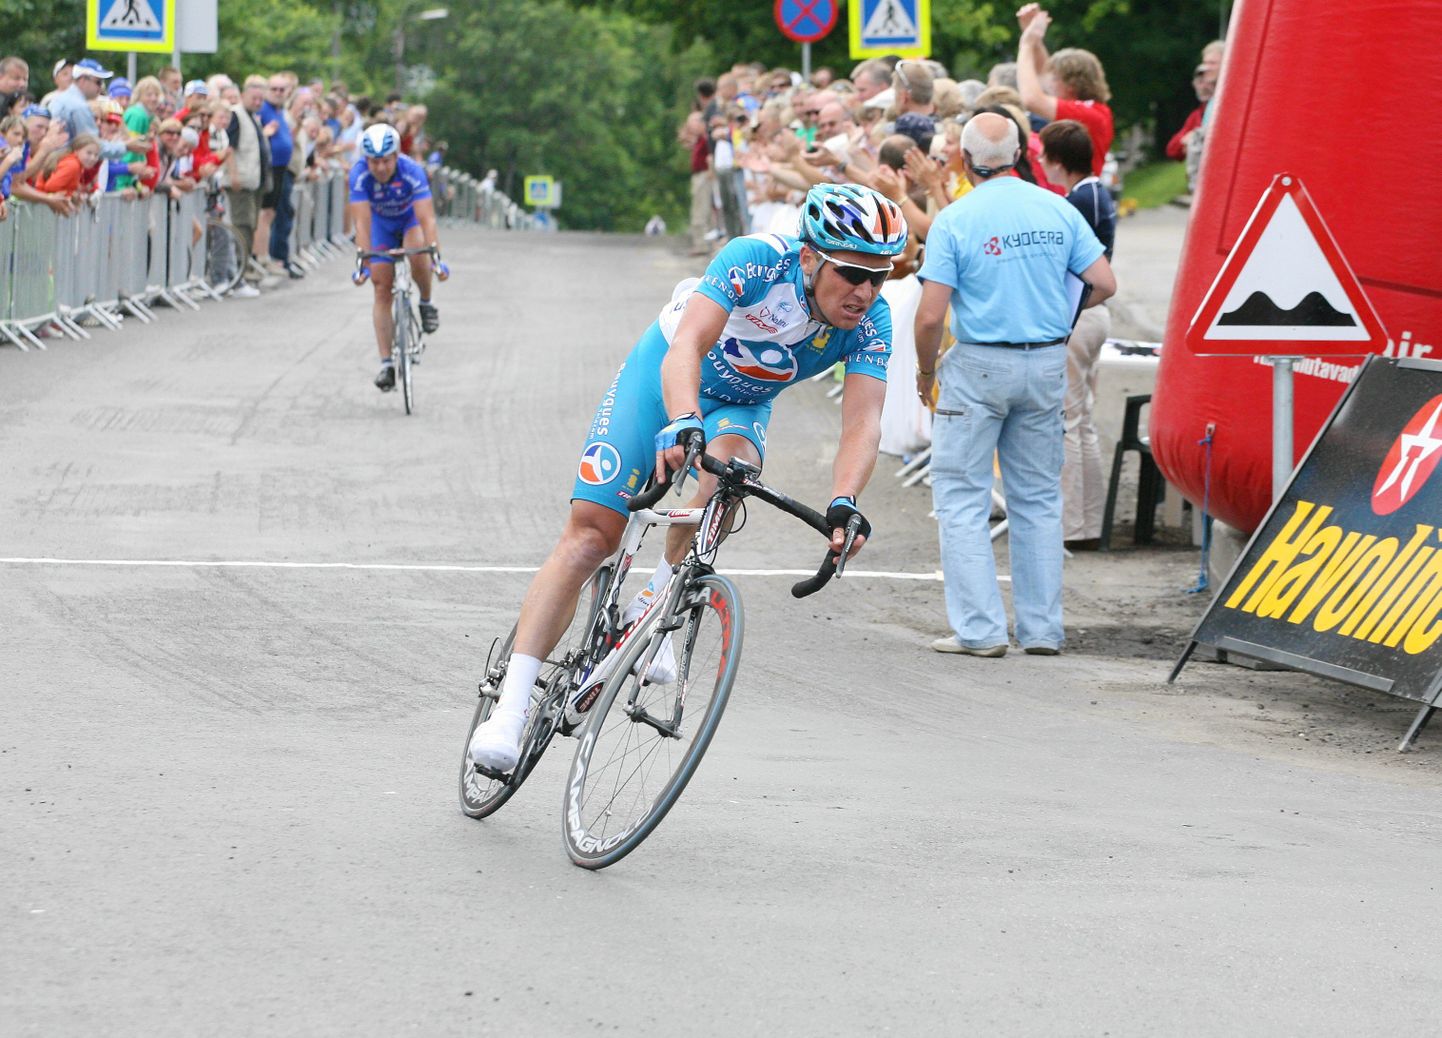 Eesti rattasõidu meistrivõistlusi peeti Viljandis ka kaks aastat tagasi. Toona võitis Erki Pütsep, olles raputanud viimasel kilomeetril maha just profispordist loobunud Jaan Kirsipuu.